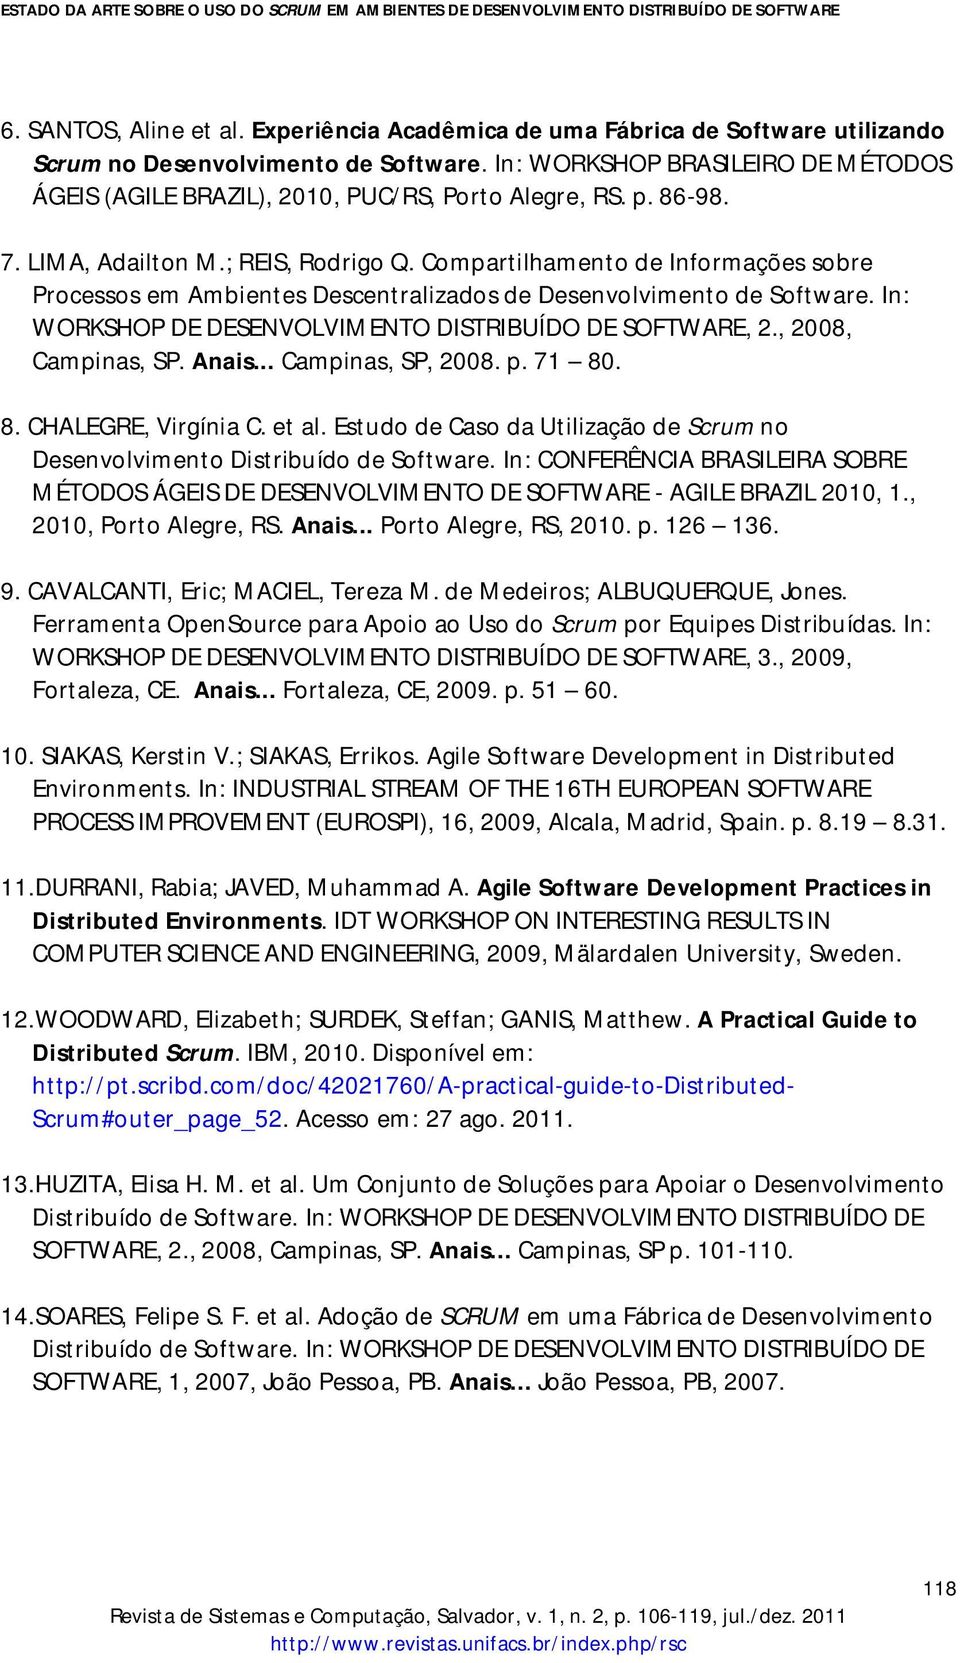 Compartilhamento de Informações sobre Processos em Ambientes Descentralizados de Desenvolvimento de Software. In: WORKSHOP DE DESENVOLVIMENTO DISTRIBUÍDO DE SOFTWARE, 2., 2008, Campinas, SP. Anais.